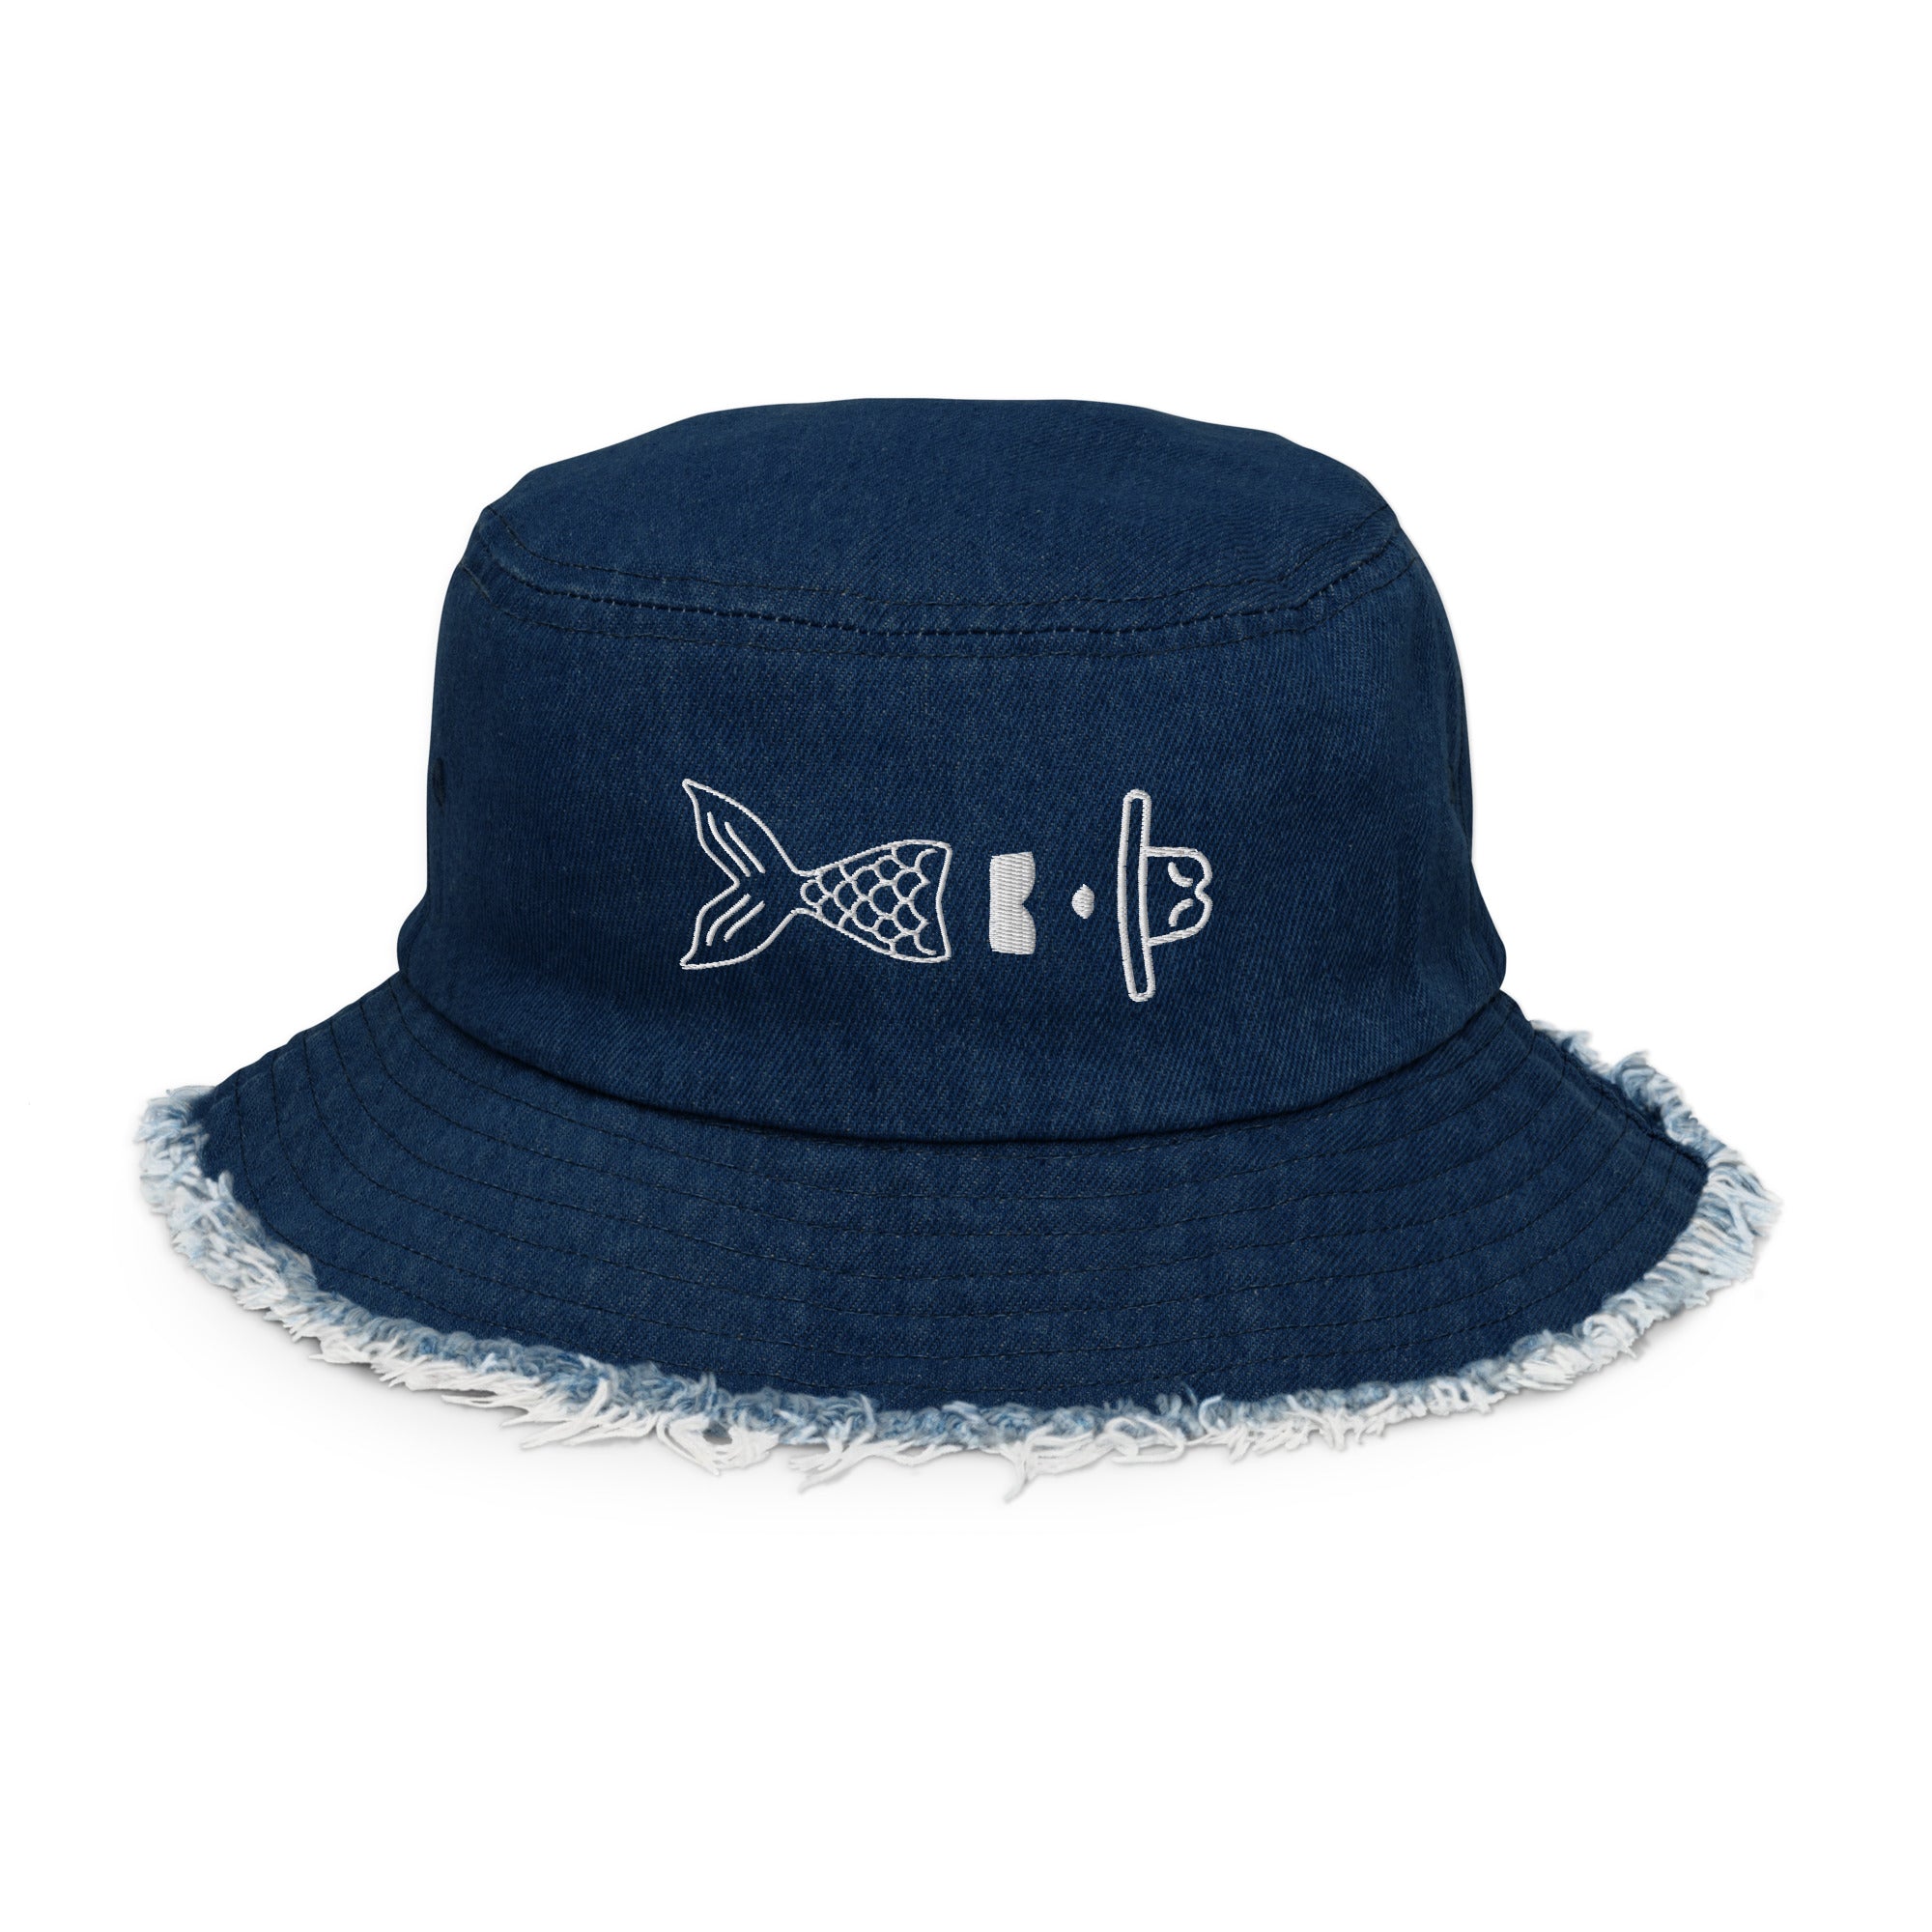 Distressed denim bucket hat – the.cowgirlmermaid